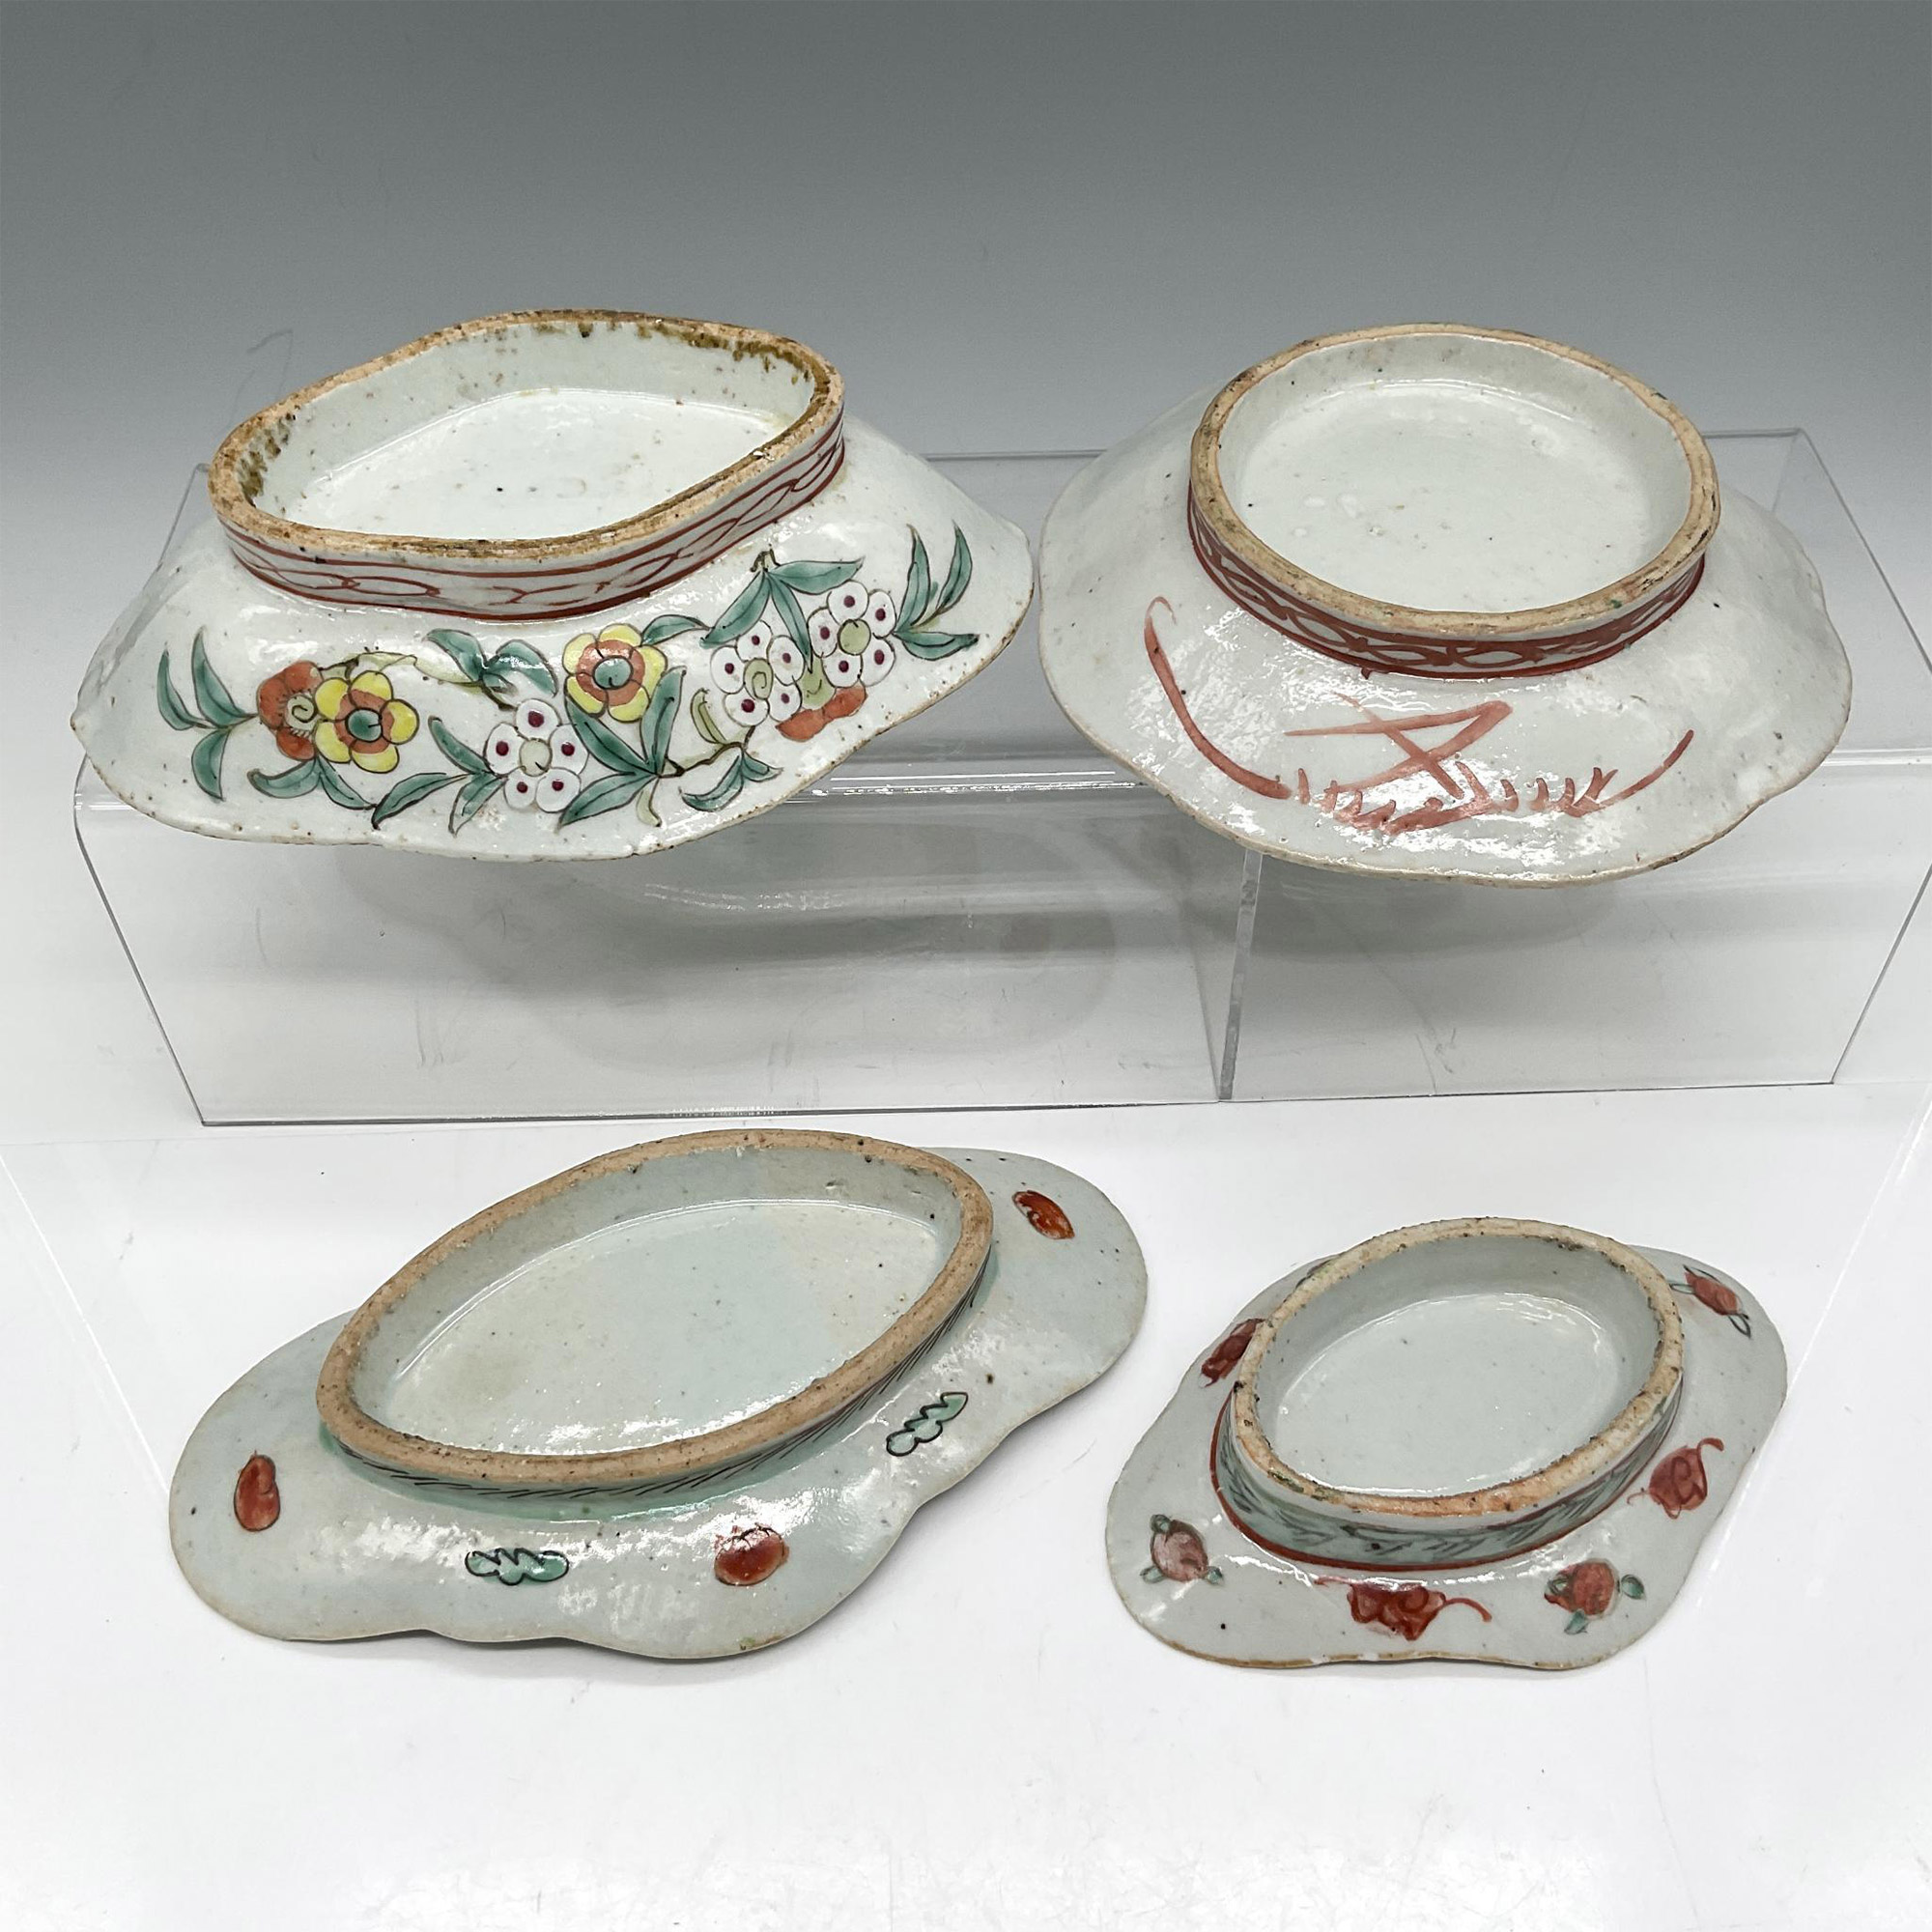 4pc Chinese Enameled Bowls - Image 3 of 3